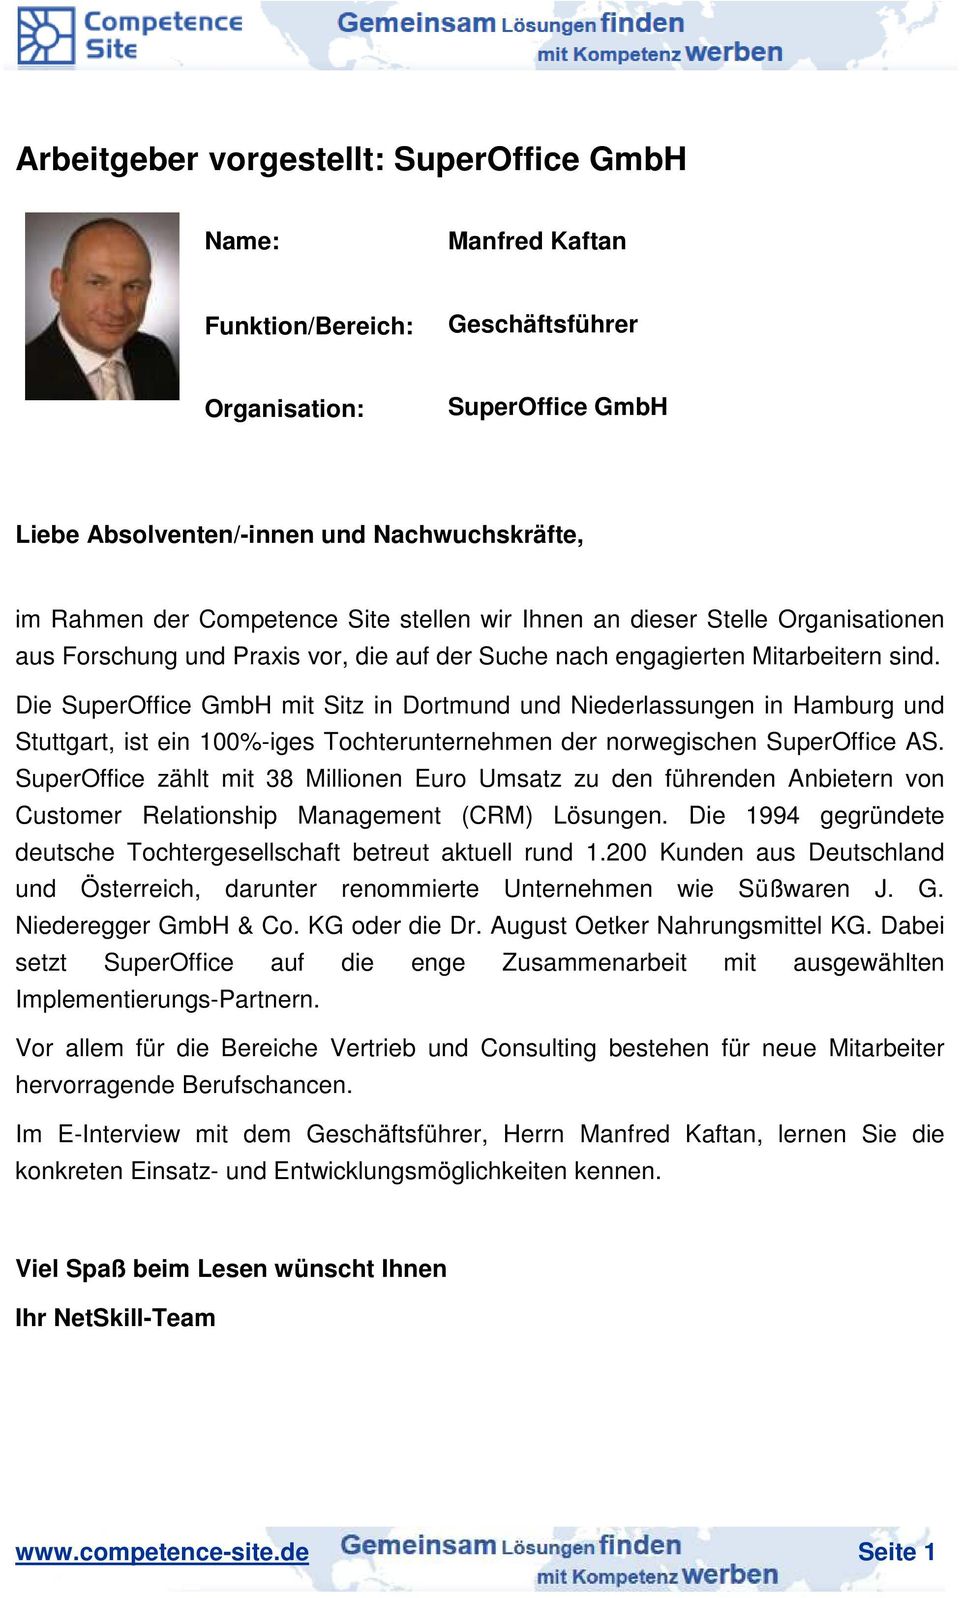 Die SuperOffice GmbH mit Sitz in Dortmund und Niederlassungen in Hamburg und Stuttgart, ist ein 100%-iges Tochterunternehmen der norwegischen SuperOffice AS.